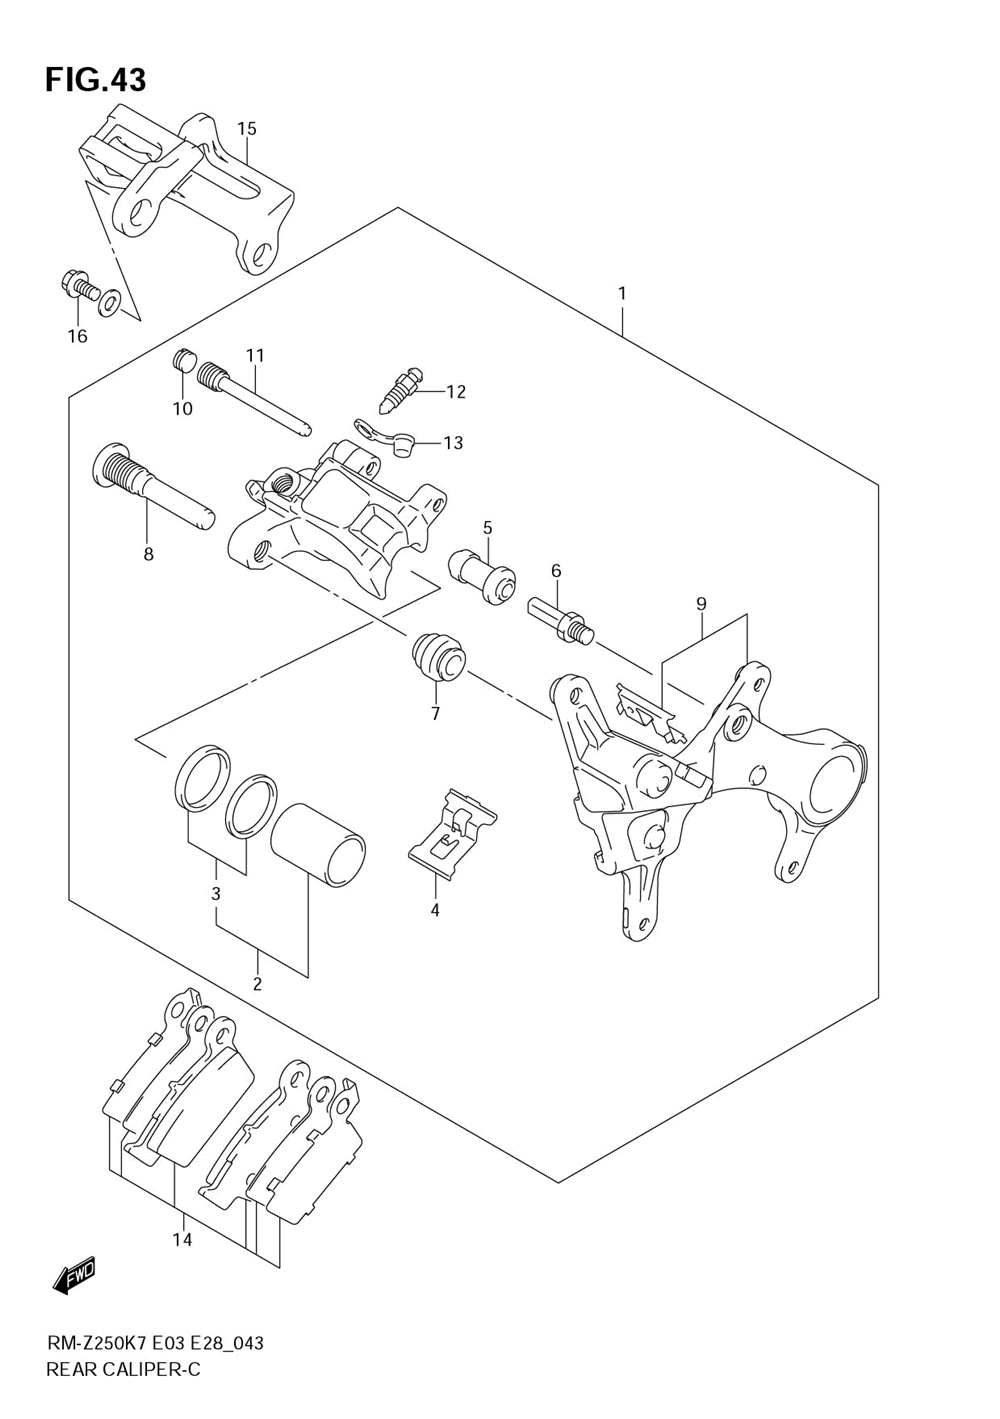 Rear caliper (model k7)